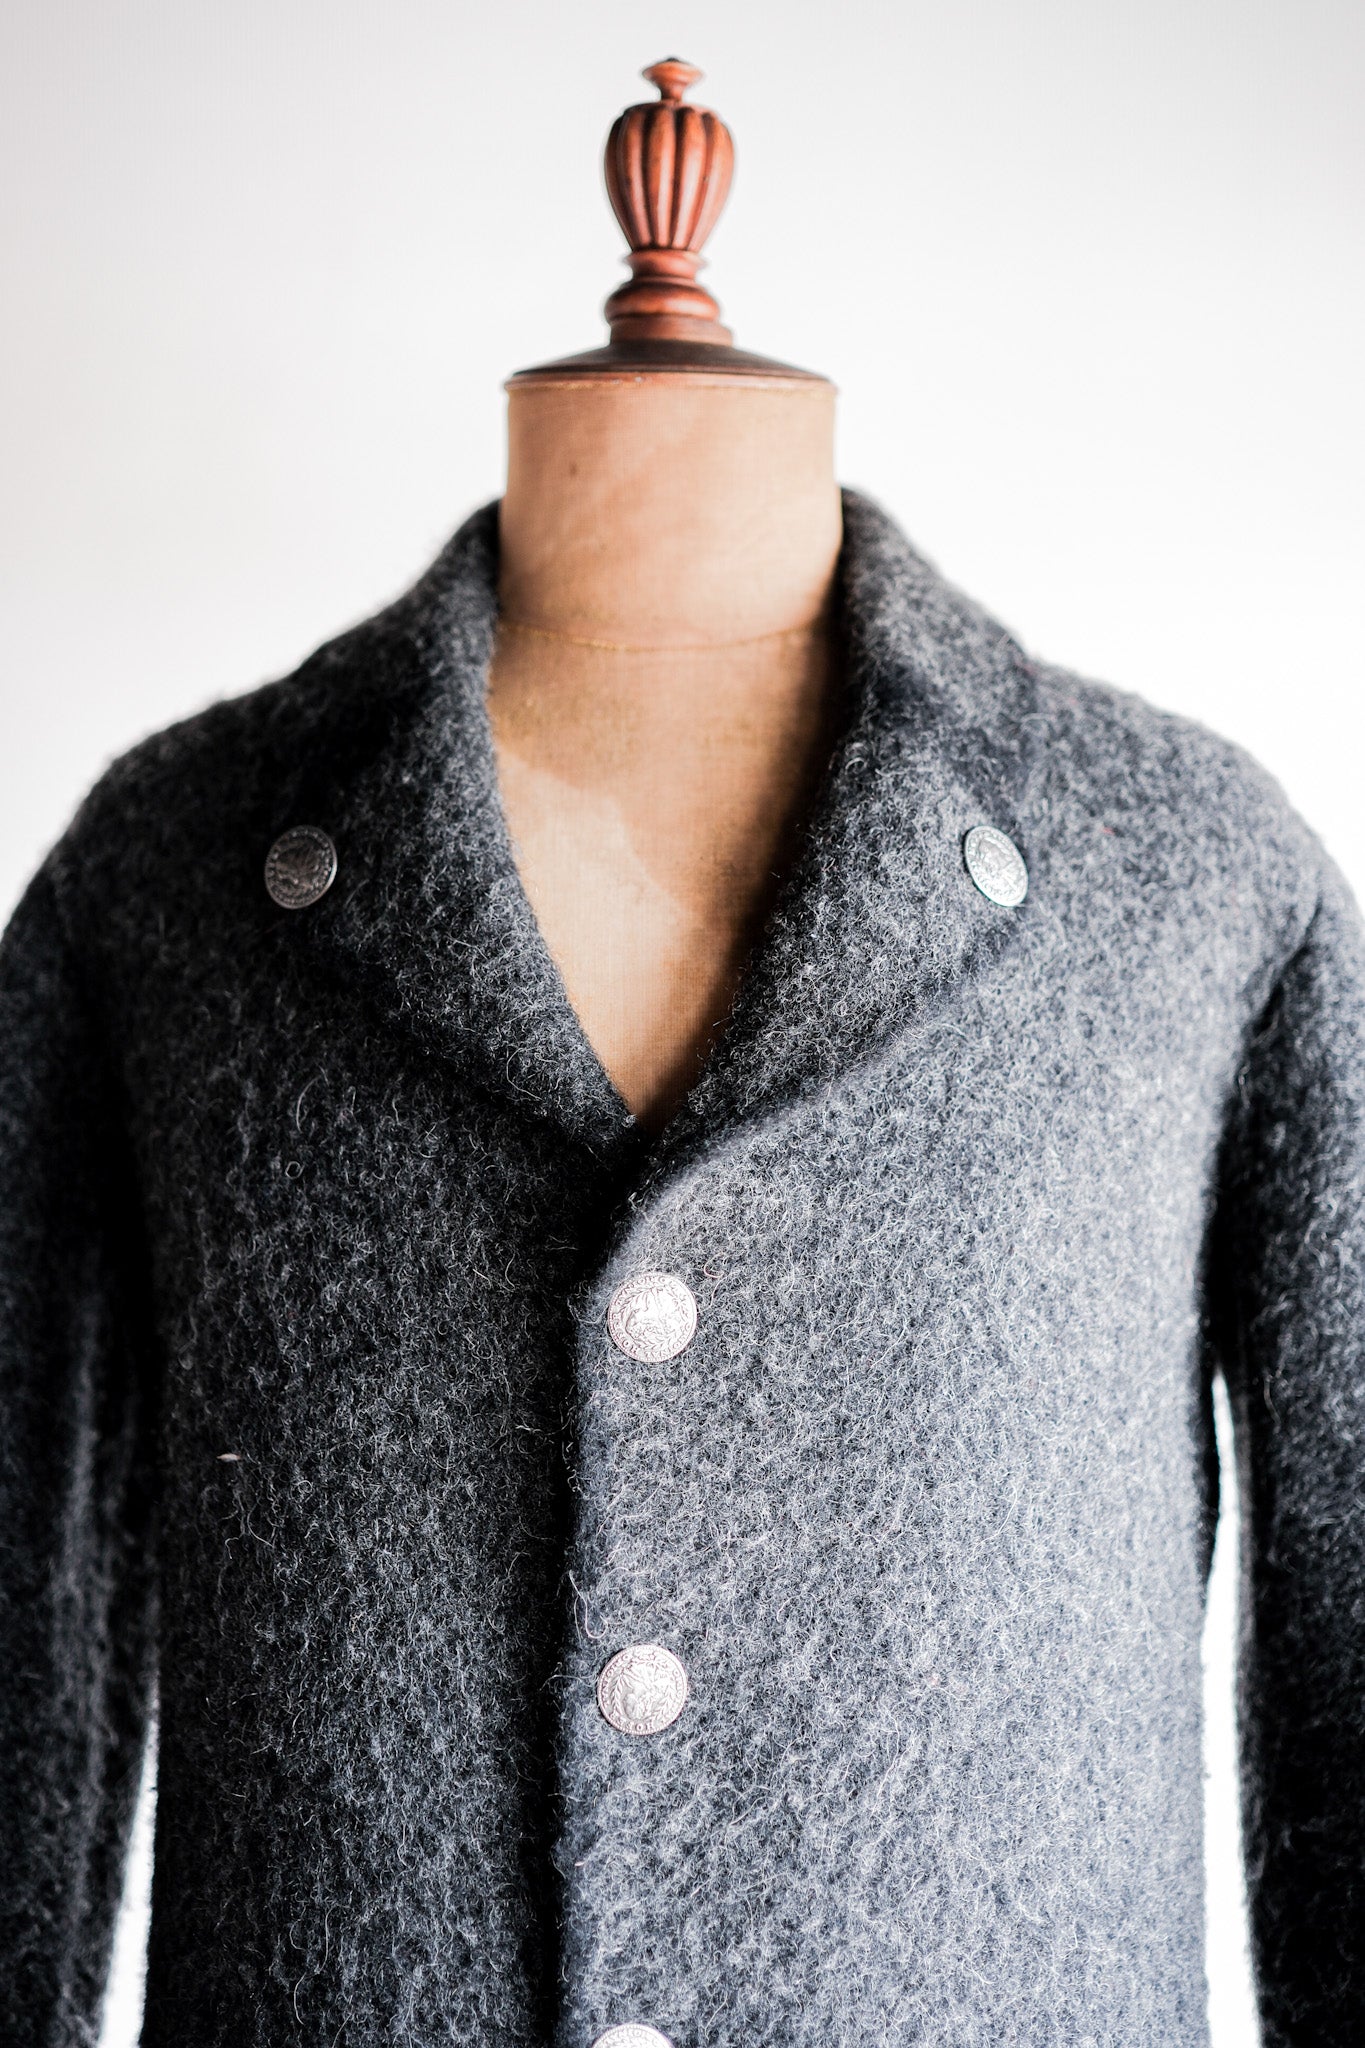 [~ 80's] Hofer Tyrolean Wool Jacket Size.44